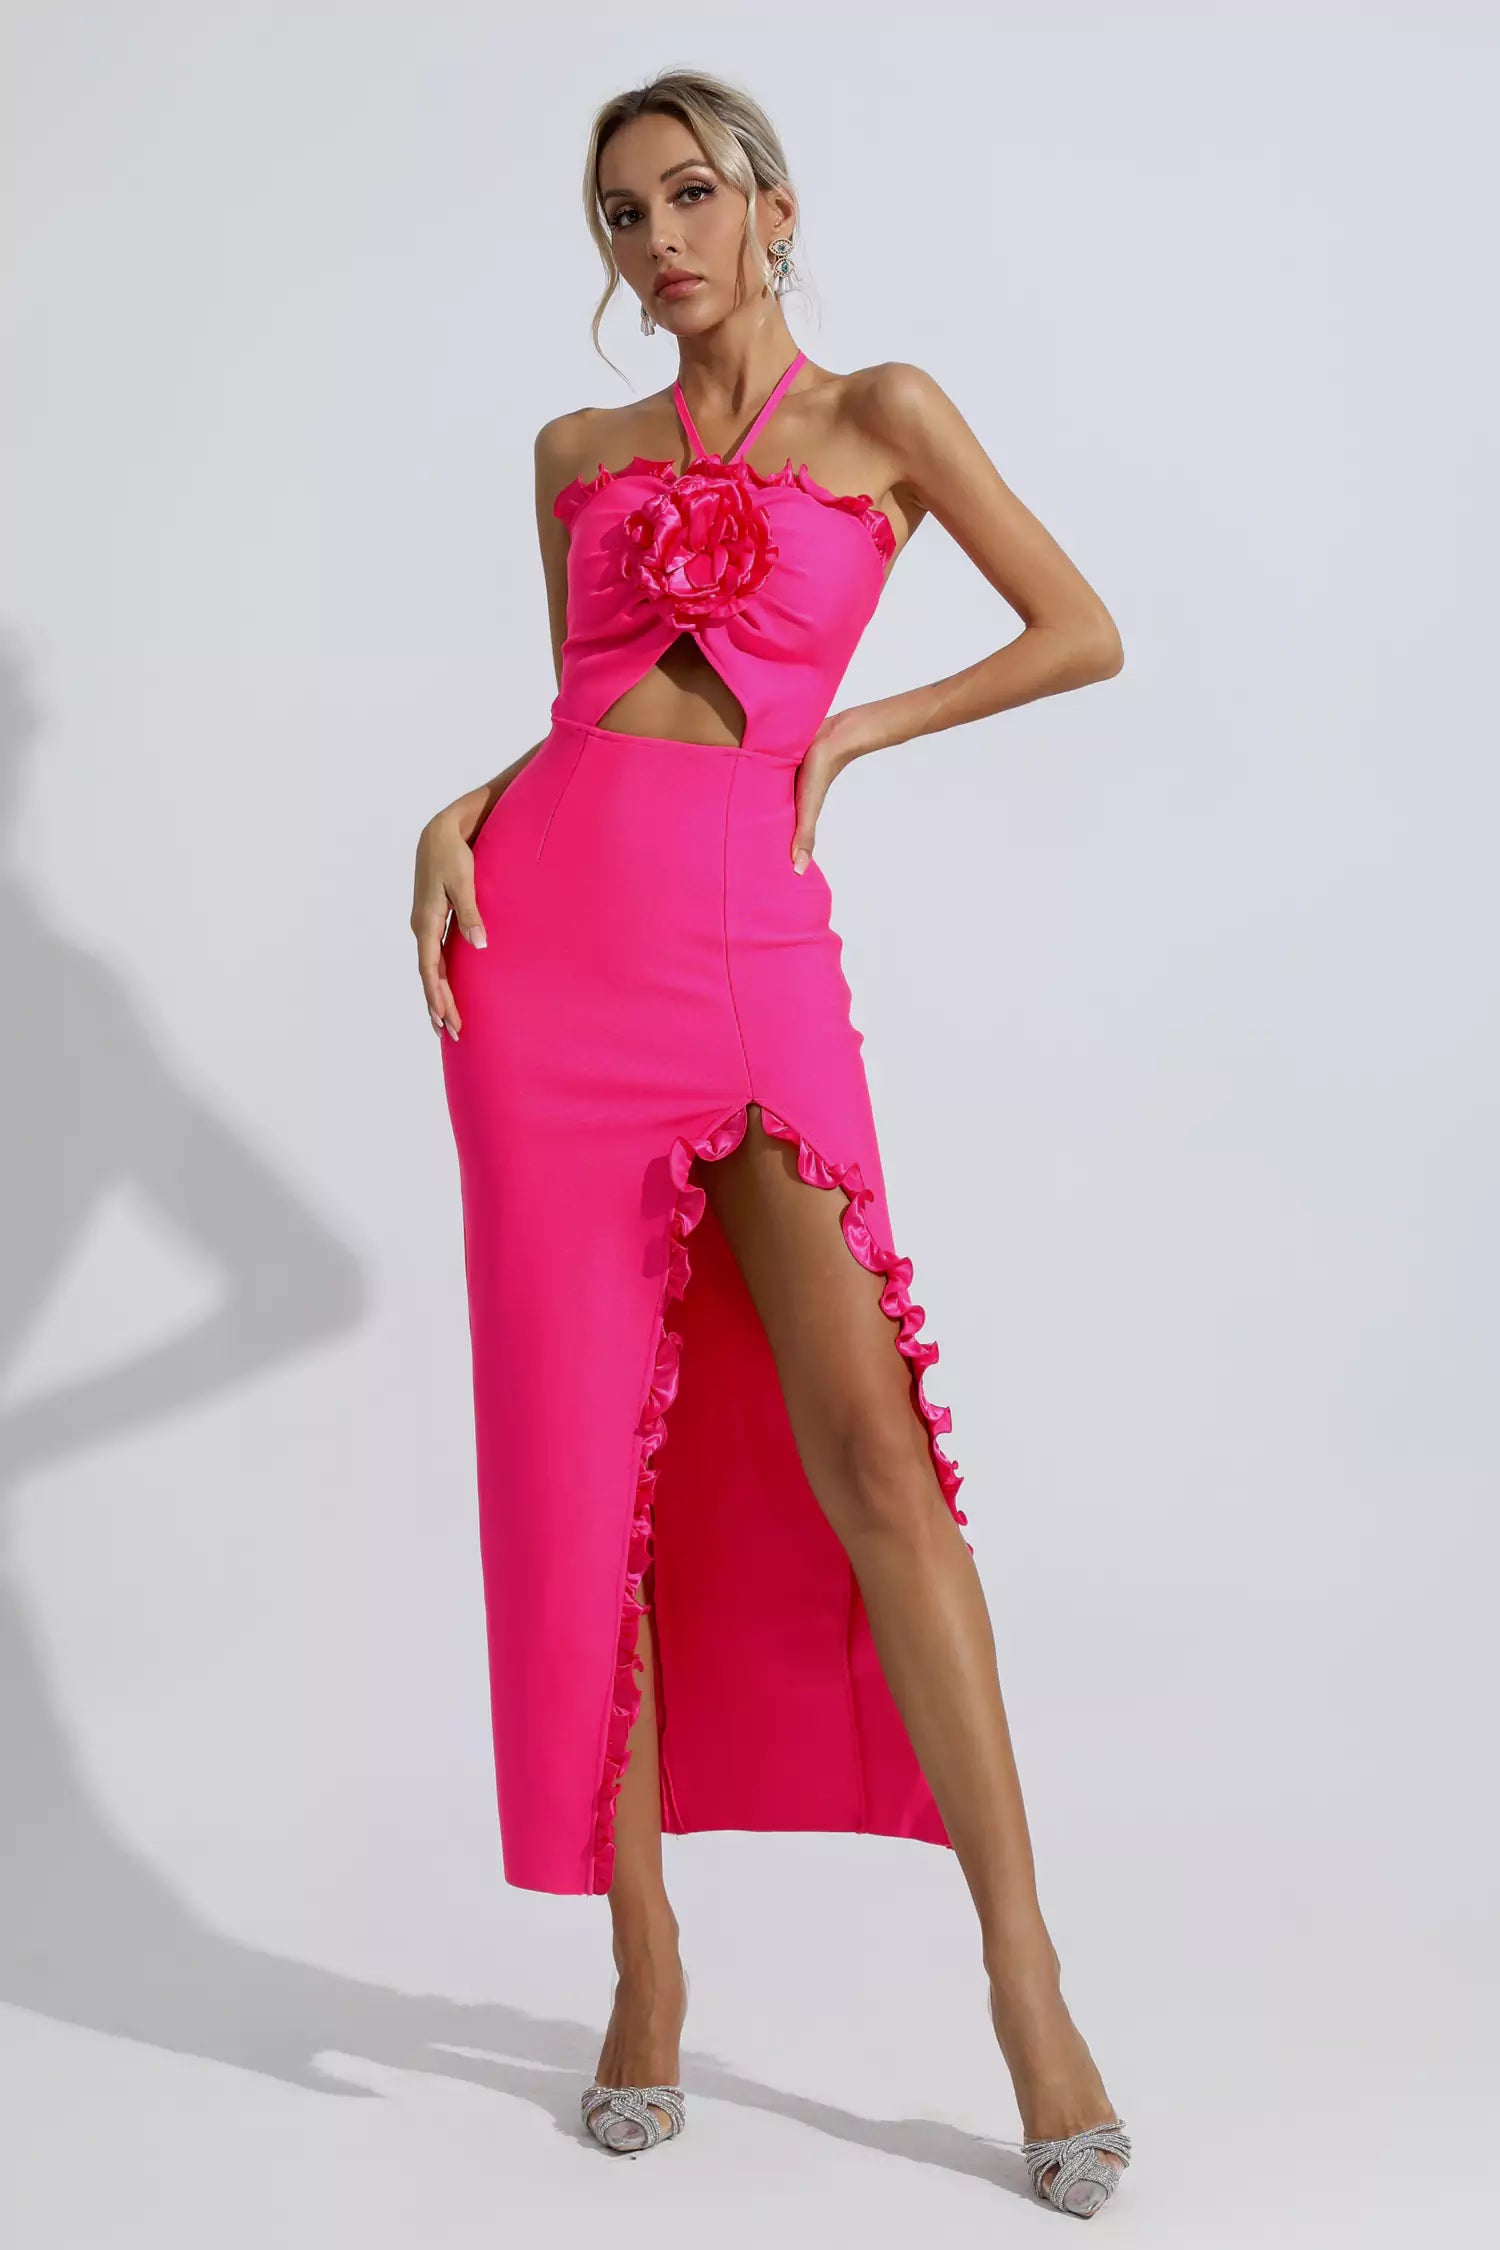 Magic Bandage Mini Dress - Luxette Boutique Hot Party Dresses